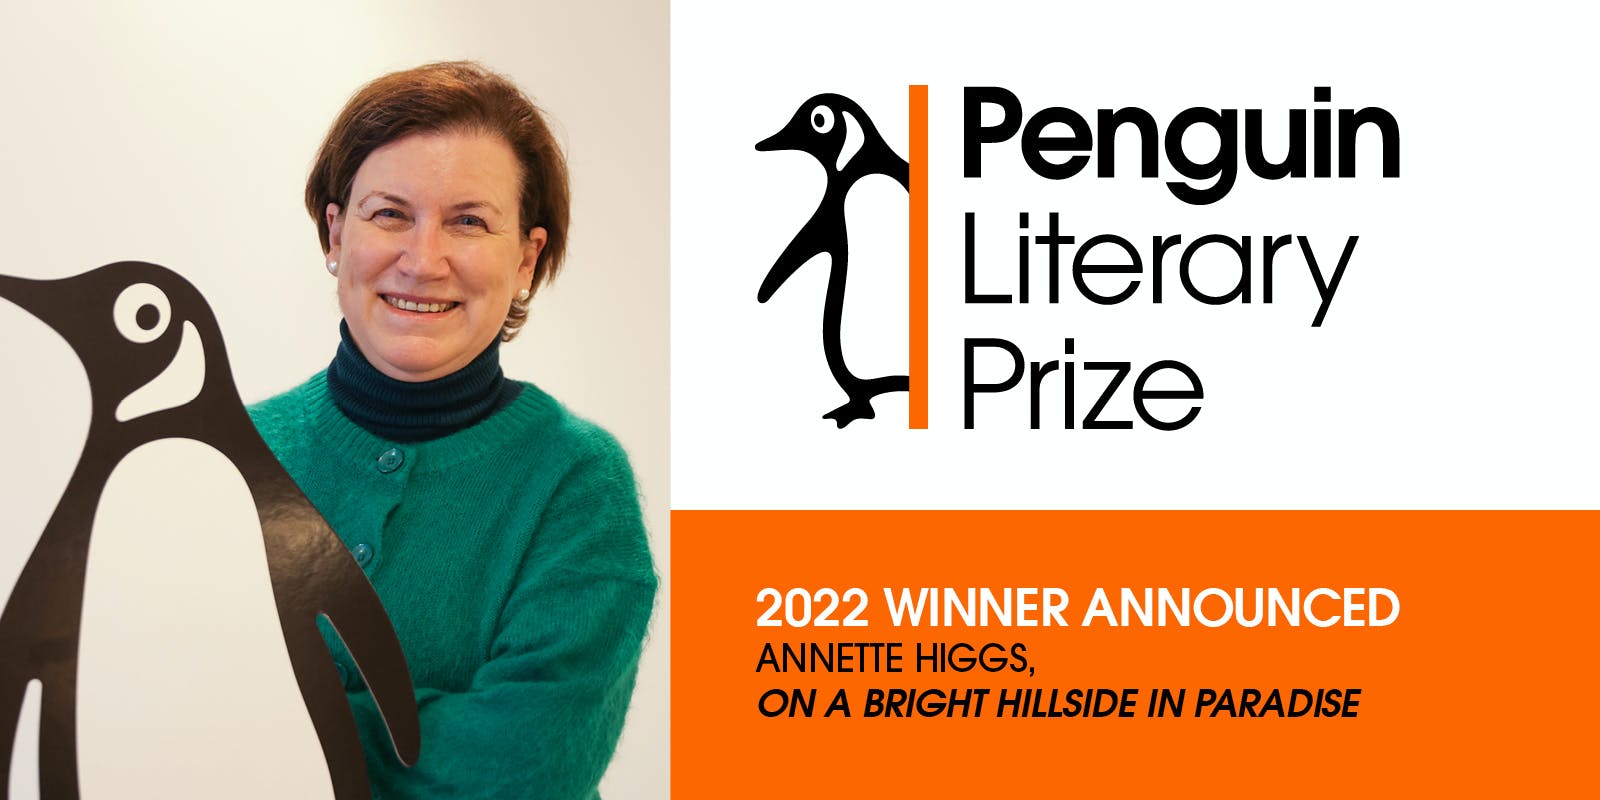 Penguin Literary Prize 2022 Winner